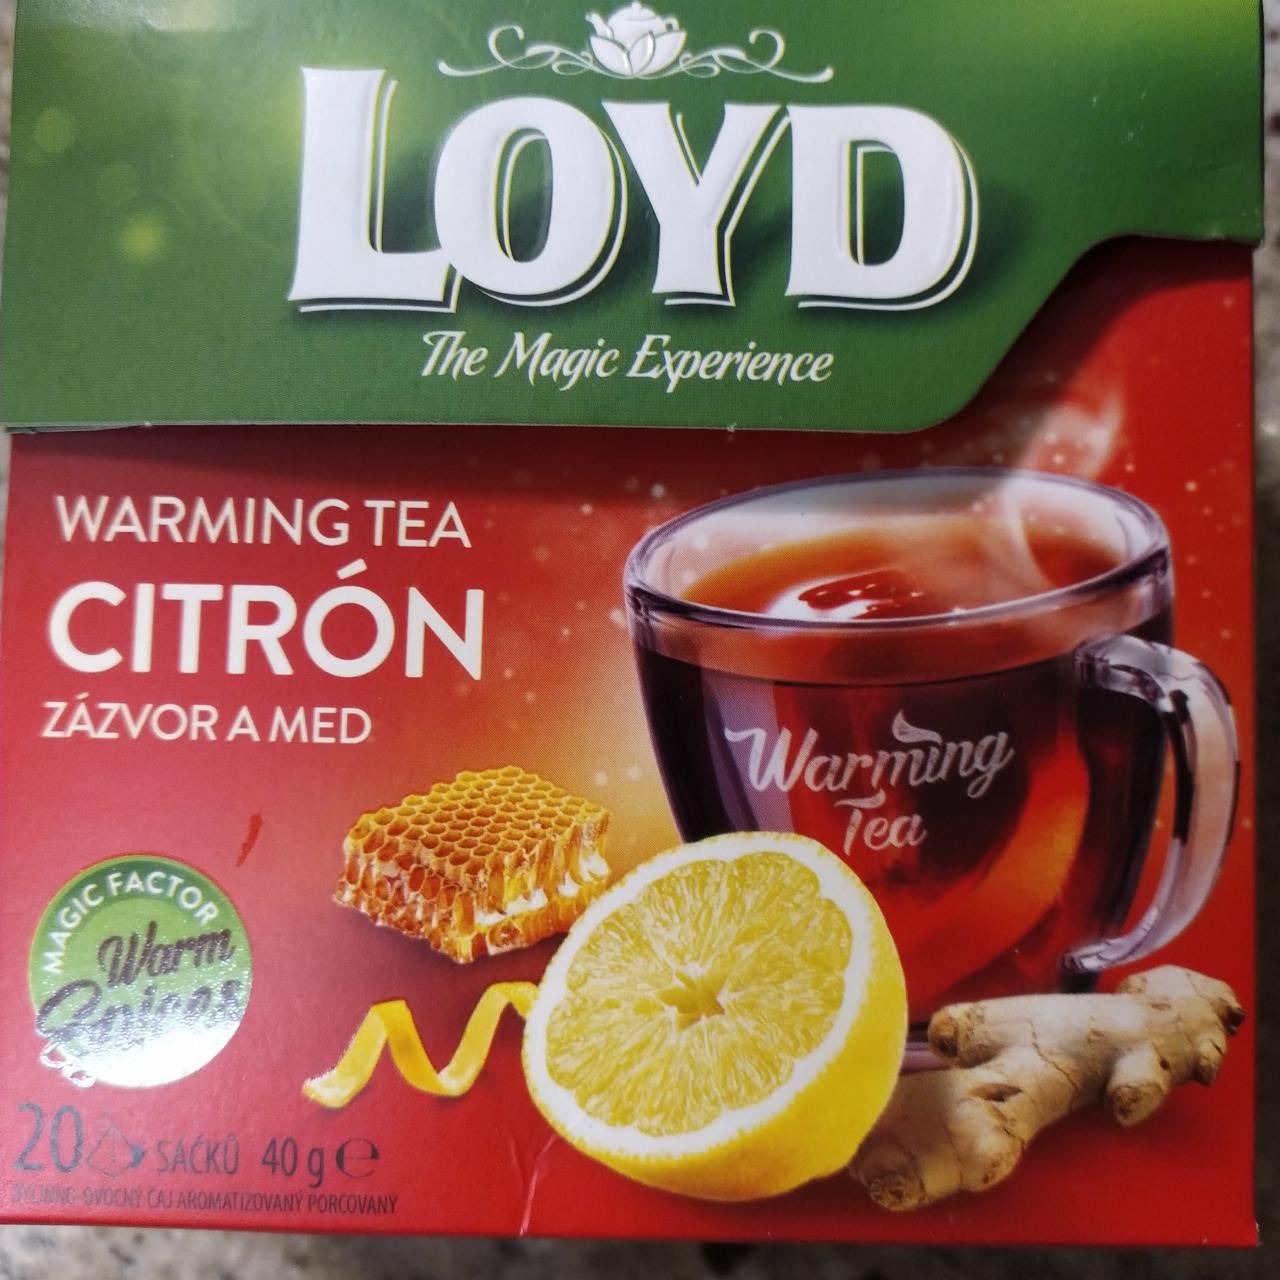 Fotografie - Warming Tea Citrón Zázvor a Med Loyd